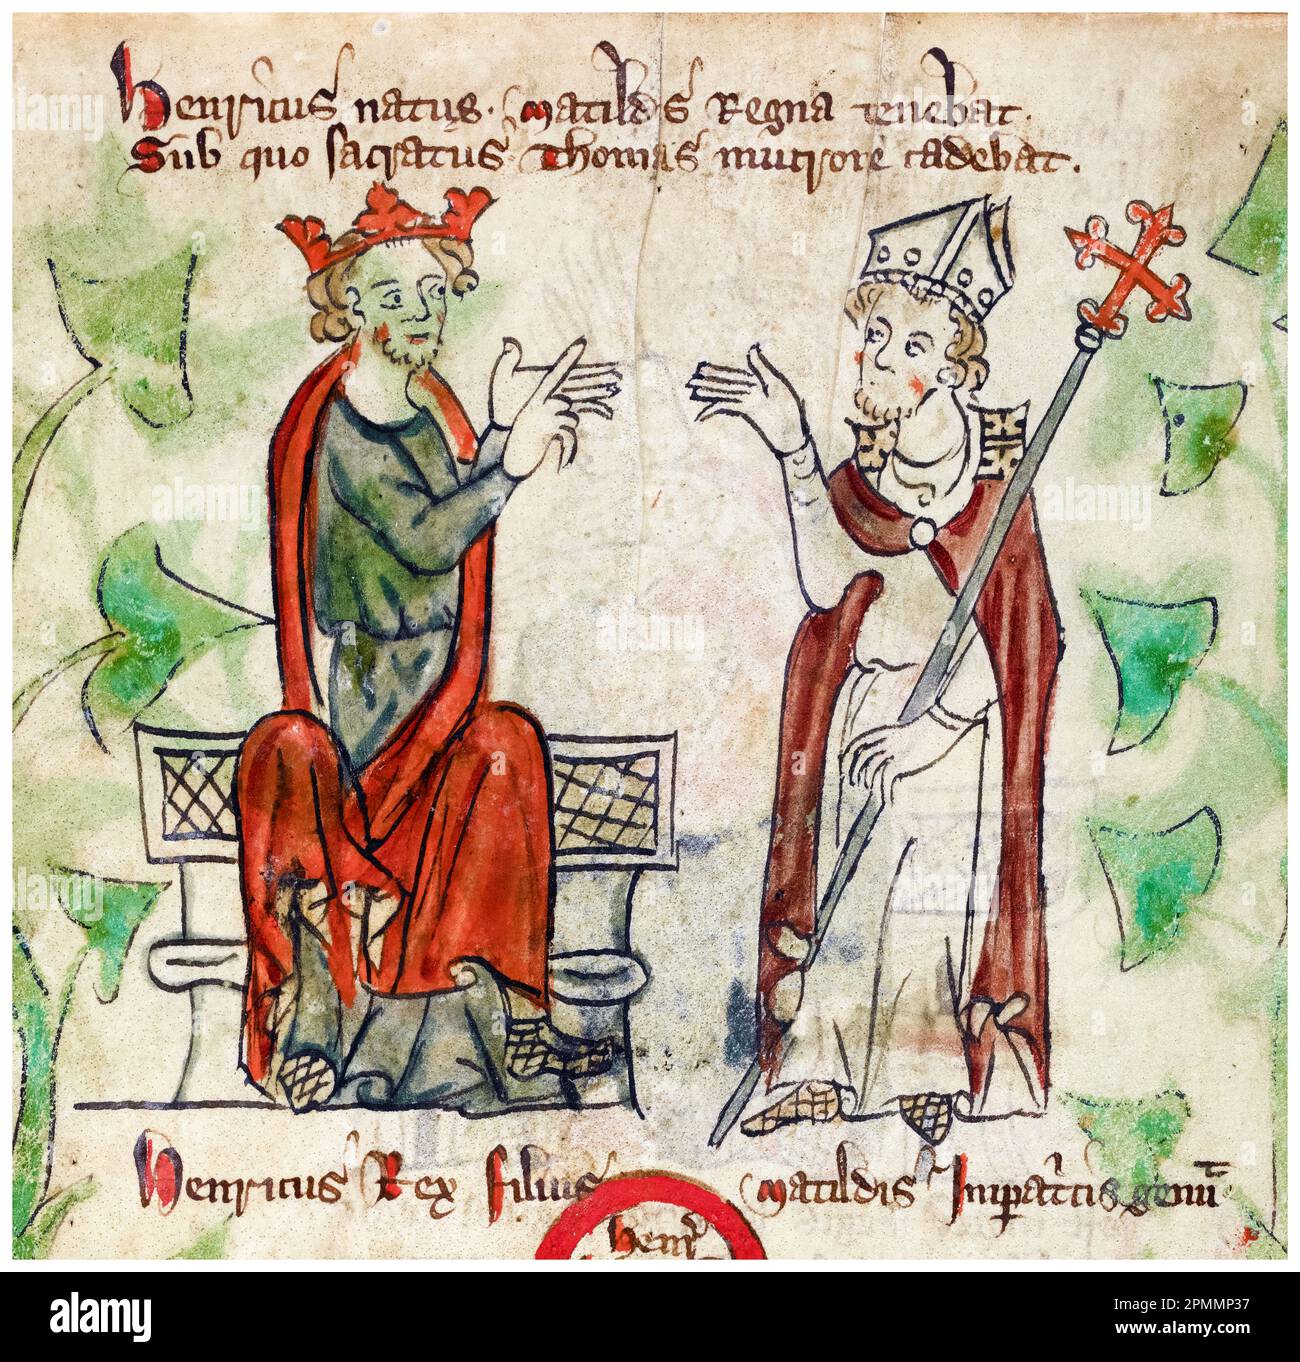 König Heinrich II. Von England (1133-1189) und Thomas Becket (1119/20-1170) Erzbischof von Canterbury, beleuchtetes Manuskript von Peter von Langtoft, 1307-1327 Stockfoto